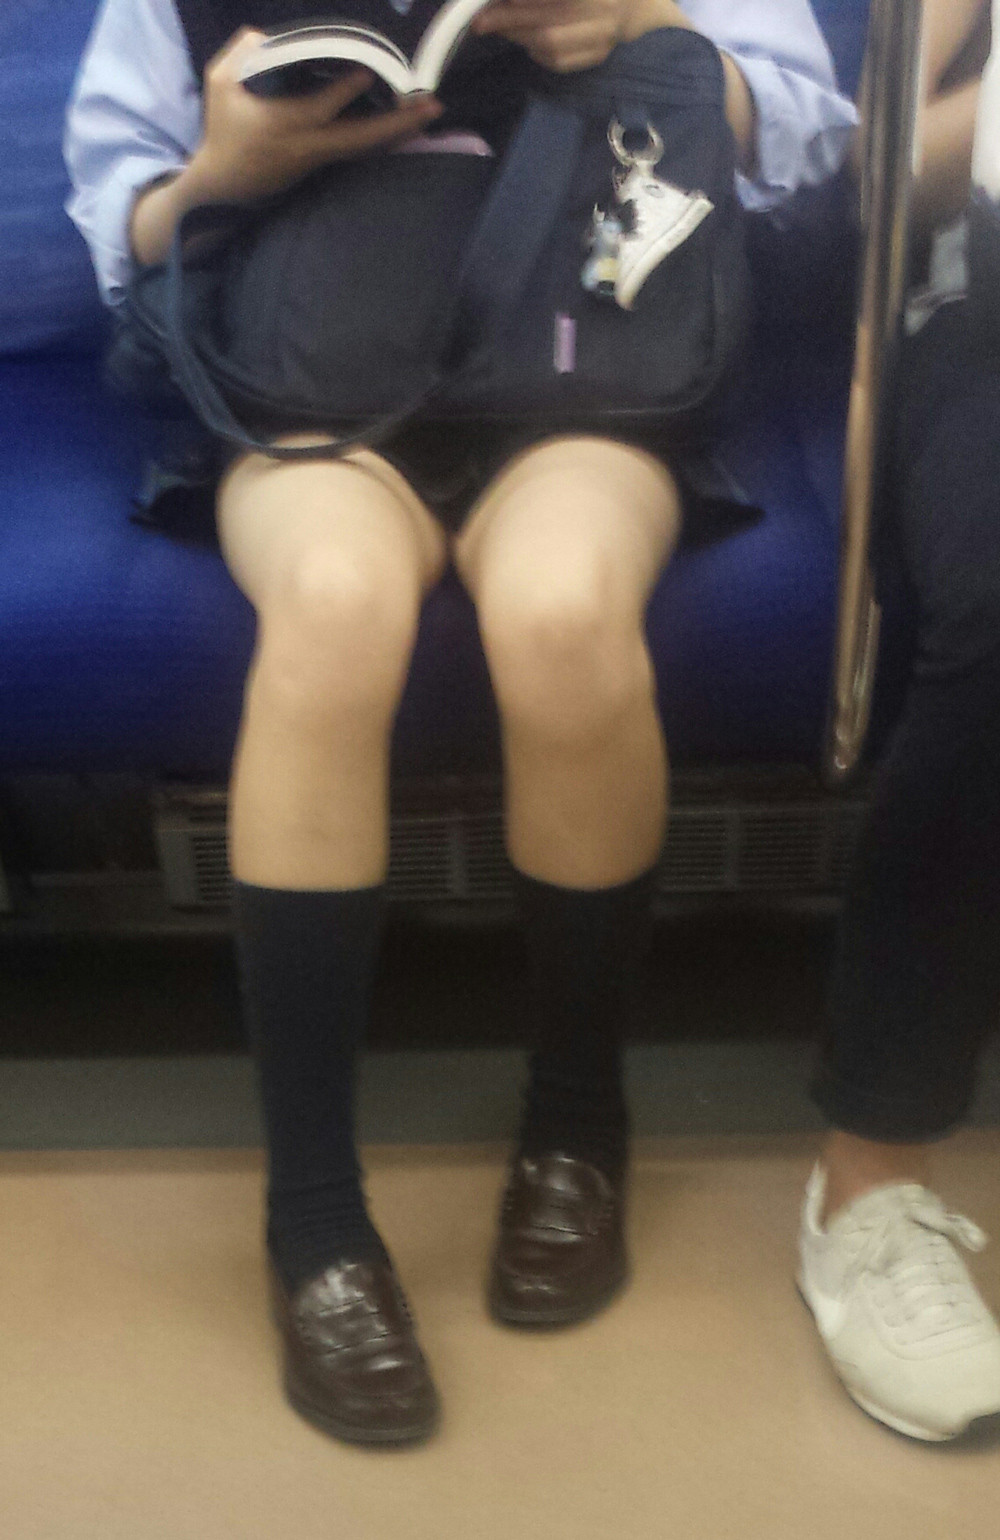 電車内のJKの生足を盗撮したエロ画像001